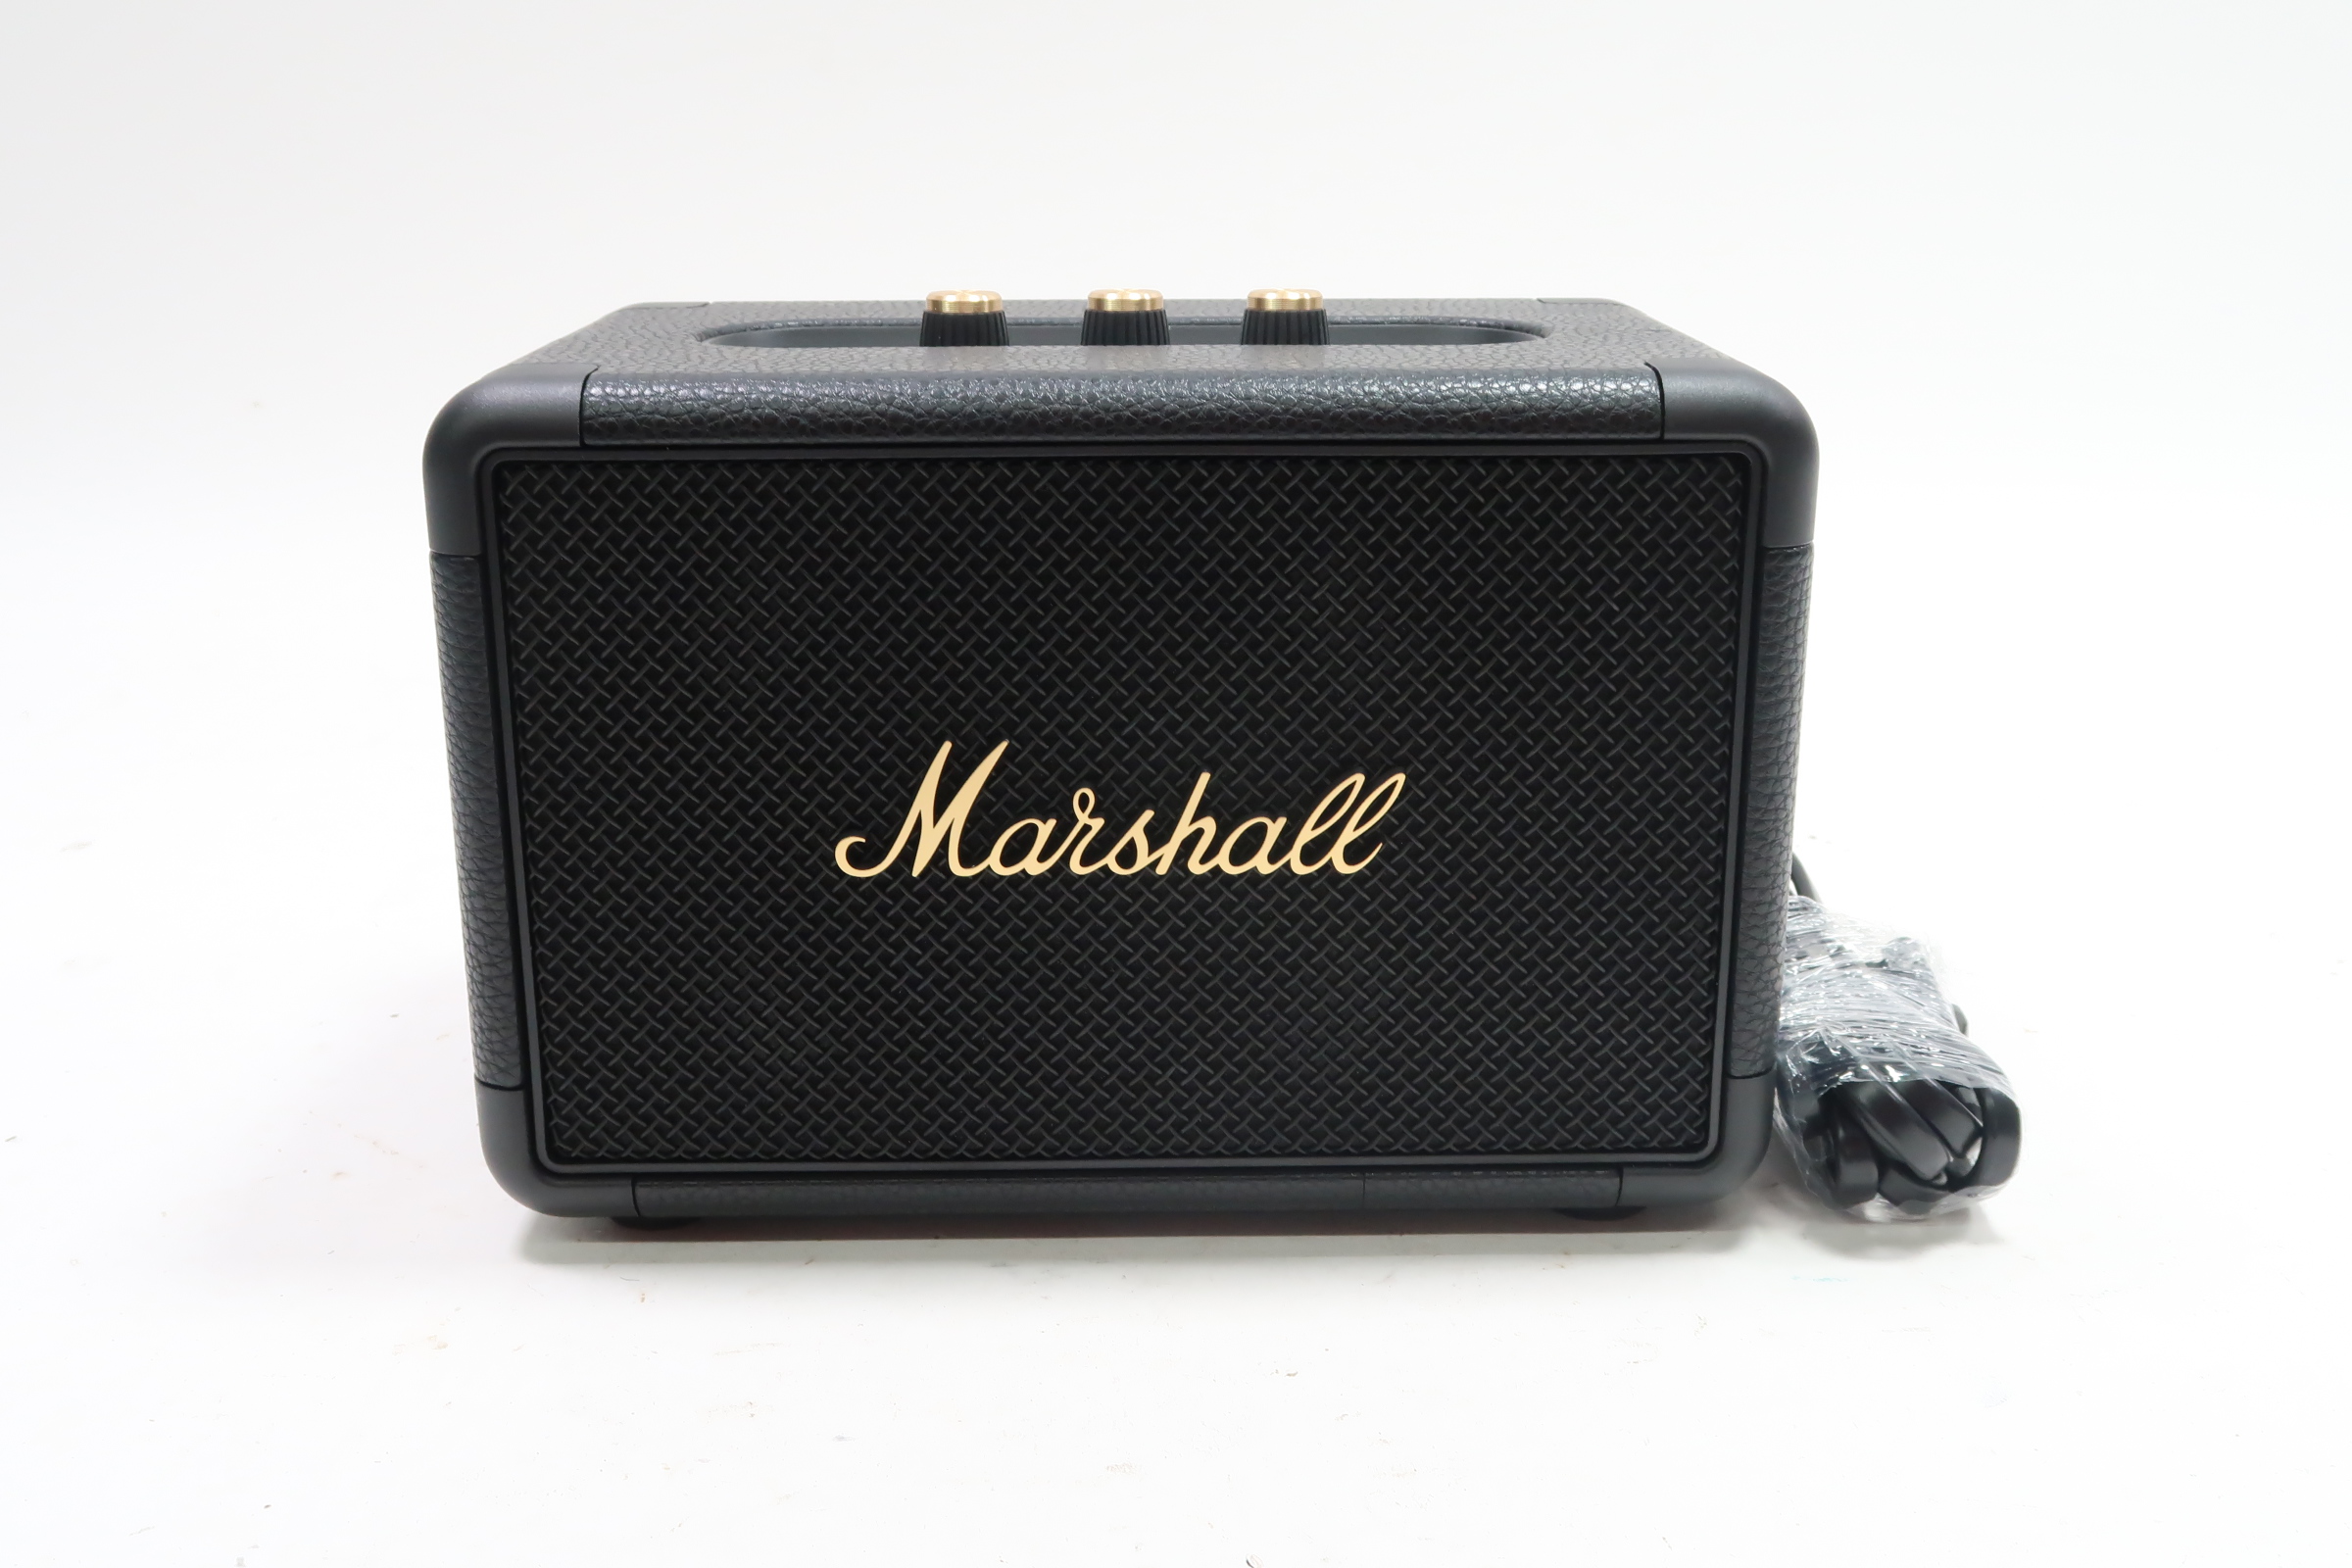 Marshall Kilburn II Speaker Portable Bluetooth